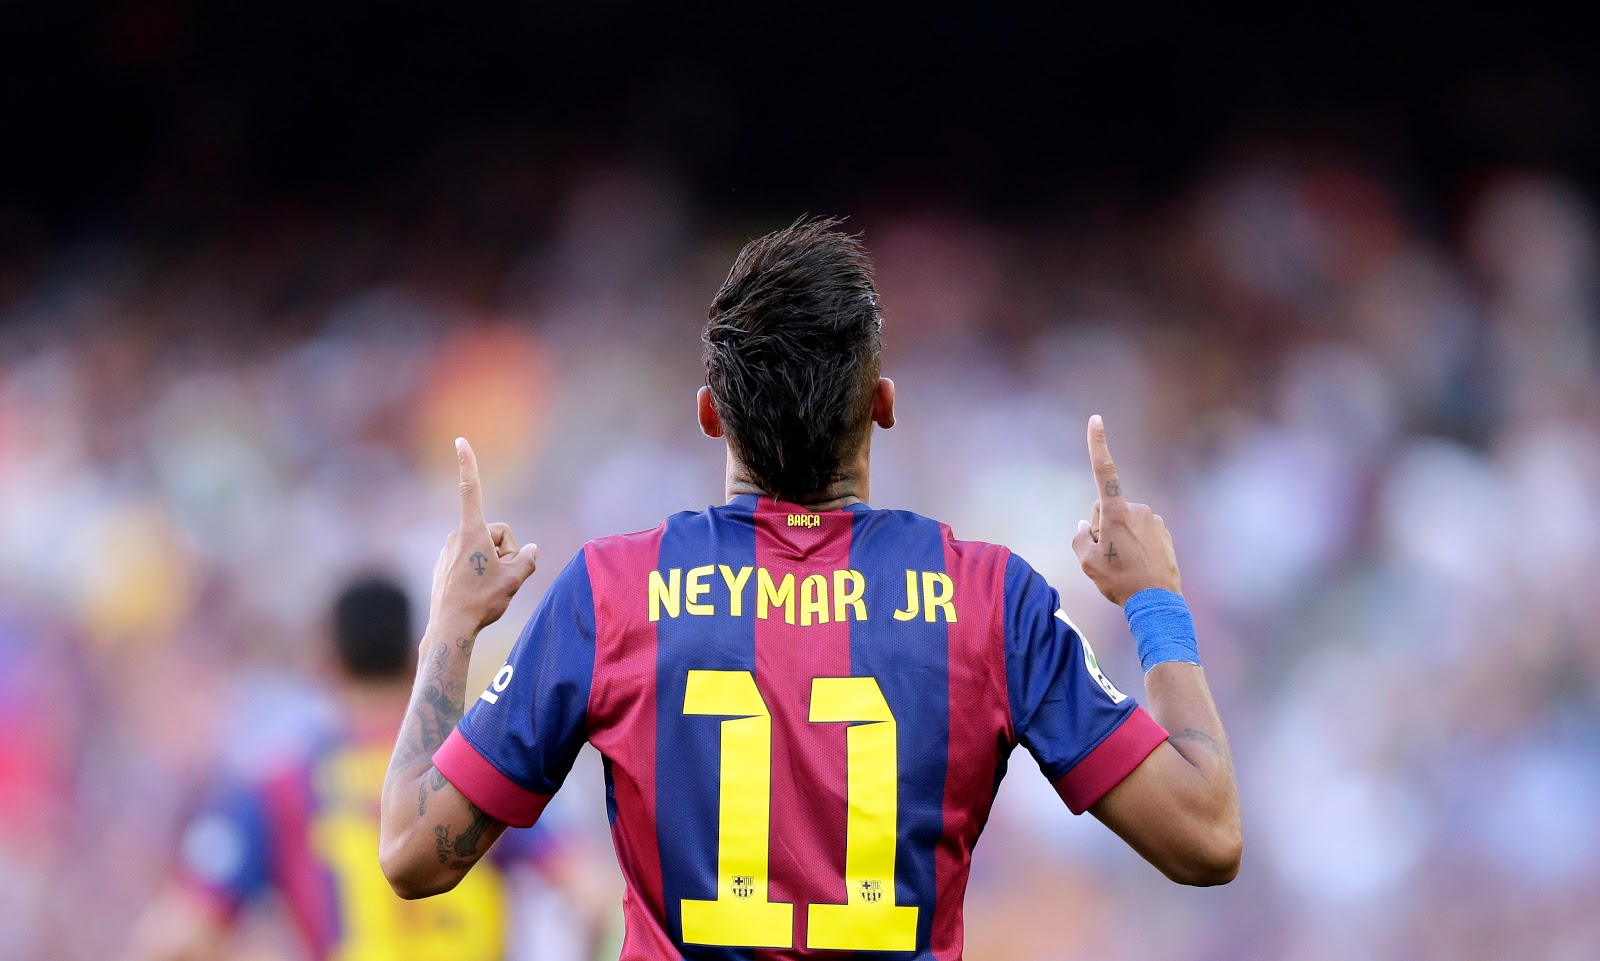 Neymar Jr Football Soccer Player Free Hd Raising Hands - Neymar Jr , HD Wallpaper & Backgrounds